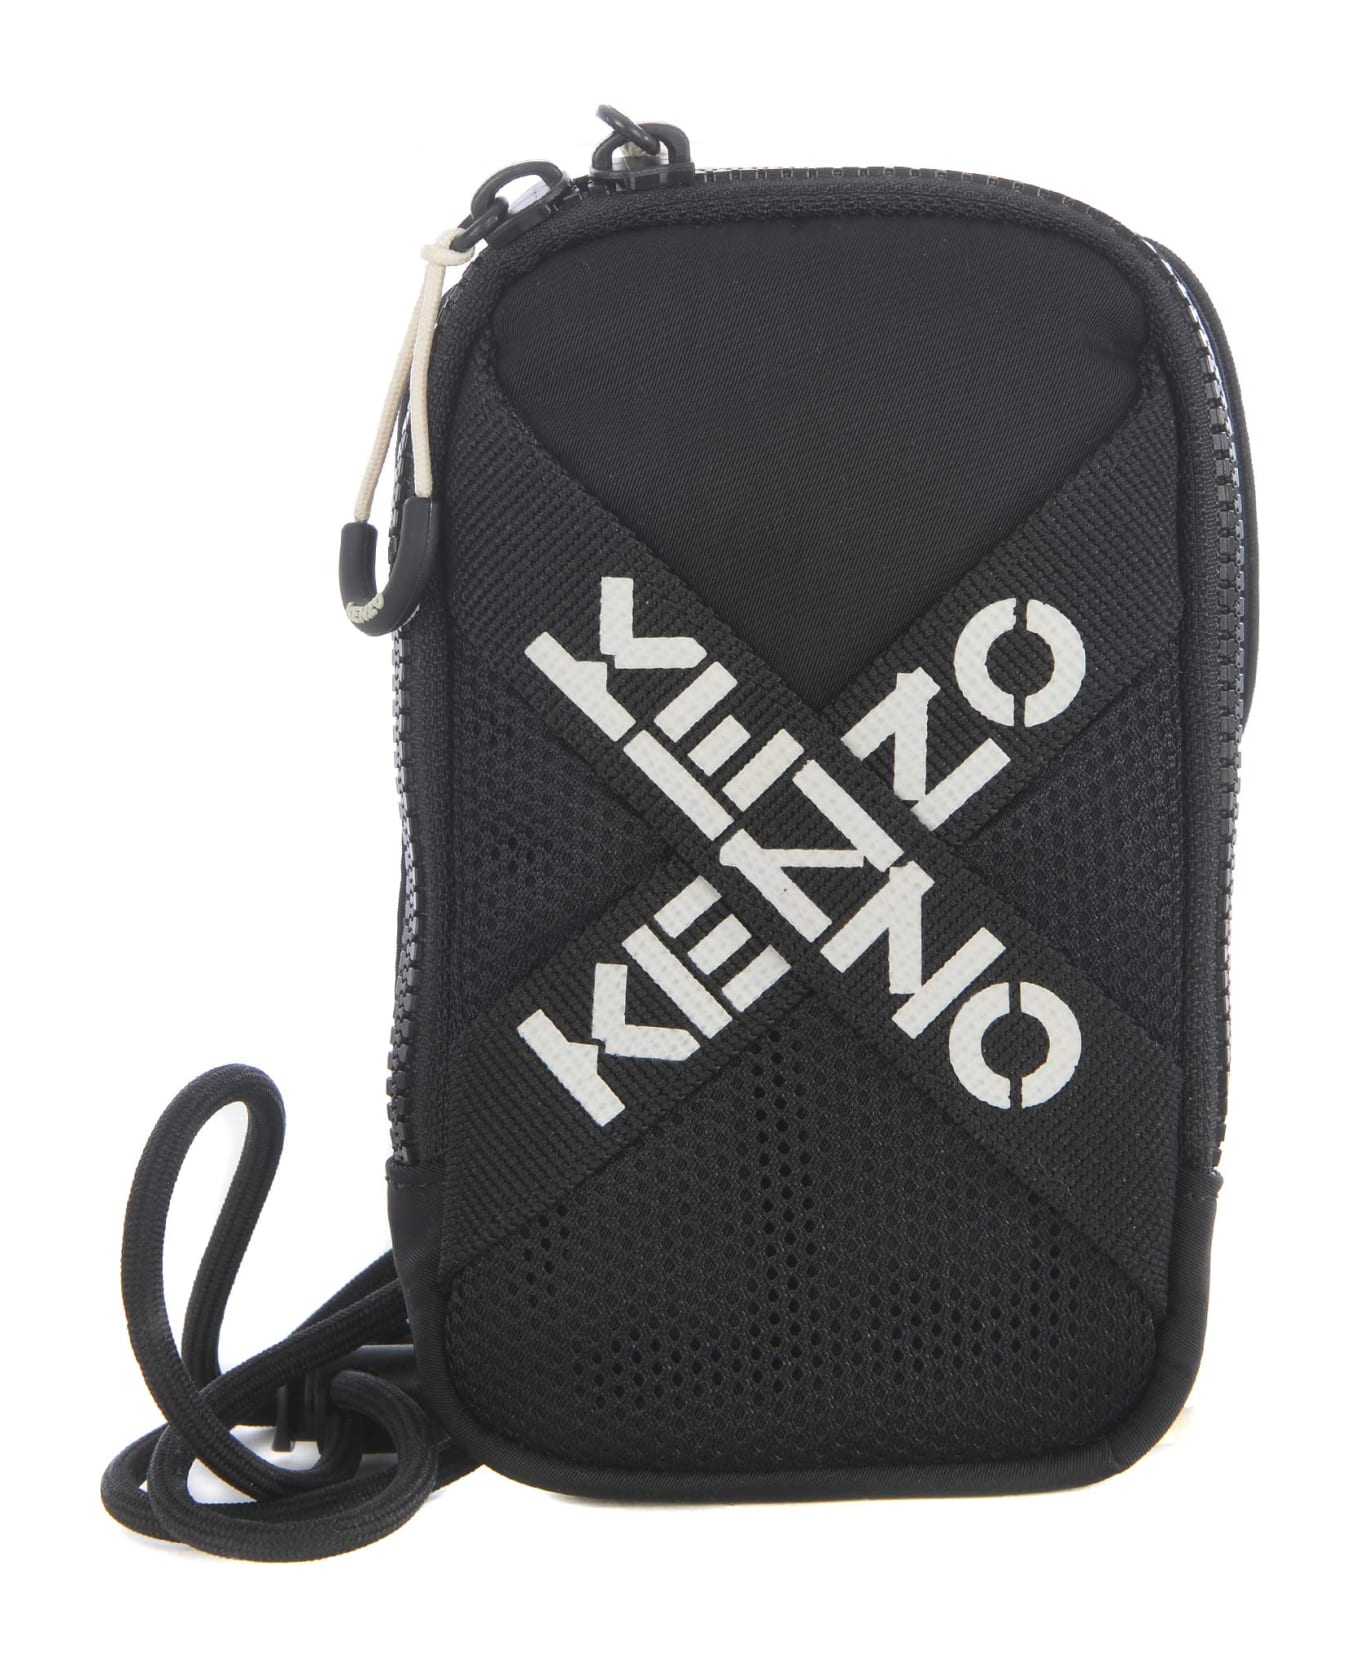 Kenzo "big X" Phone Holder In Nylon - Nero